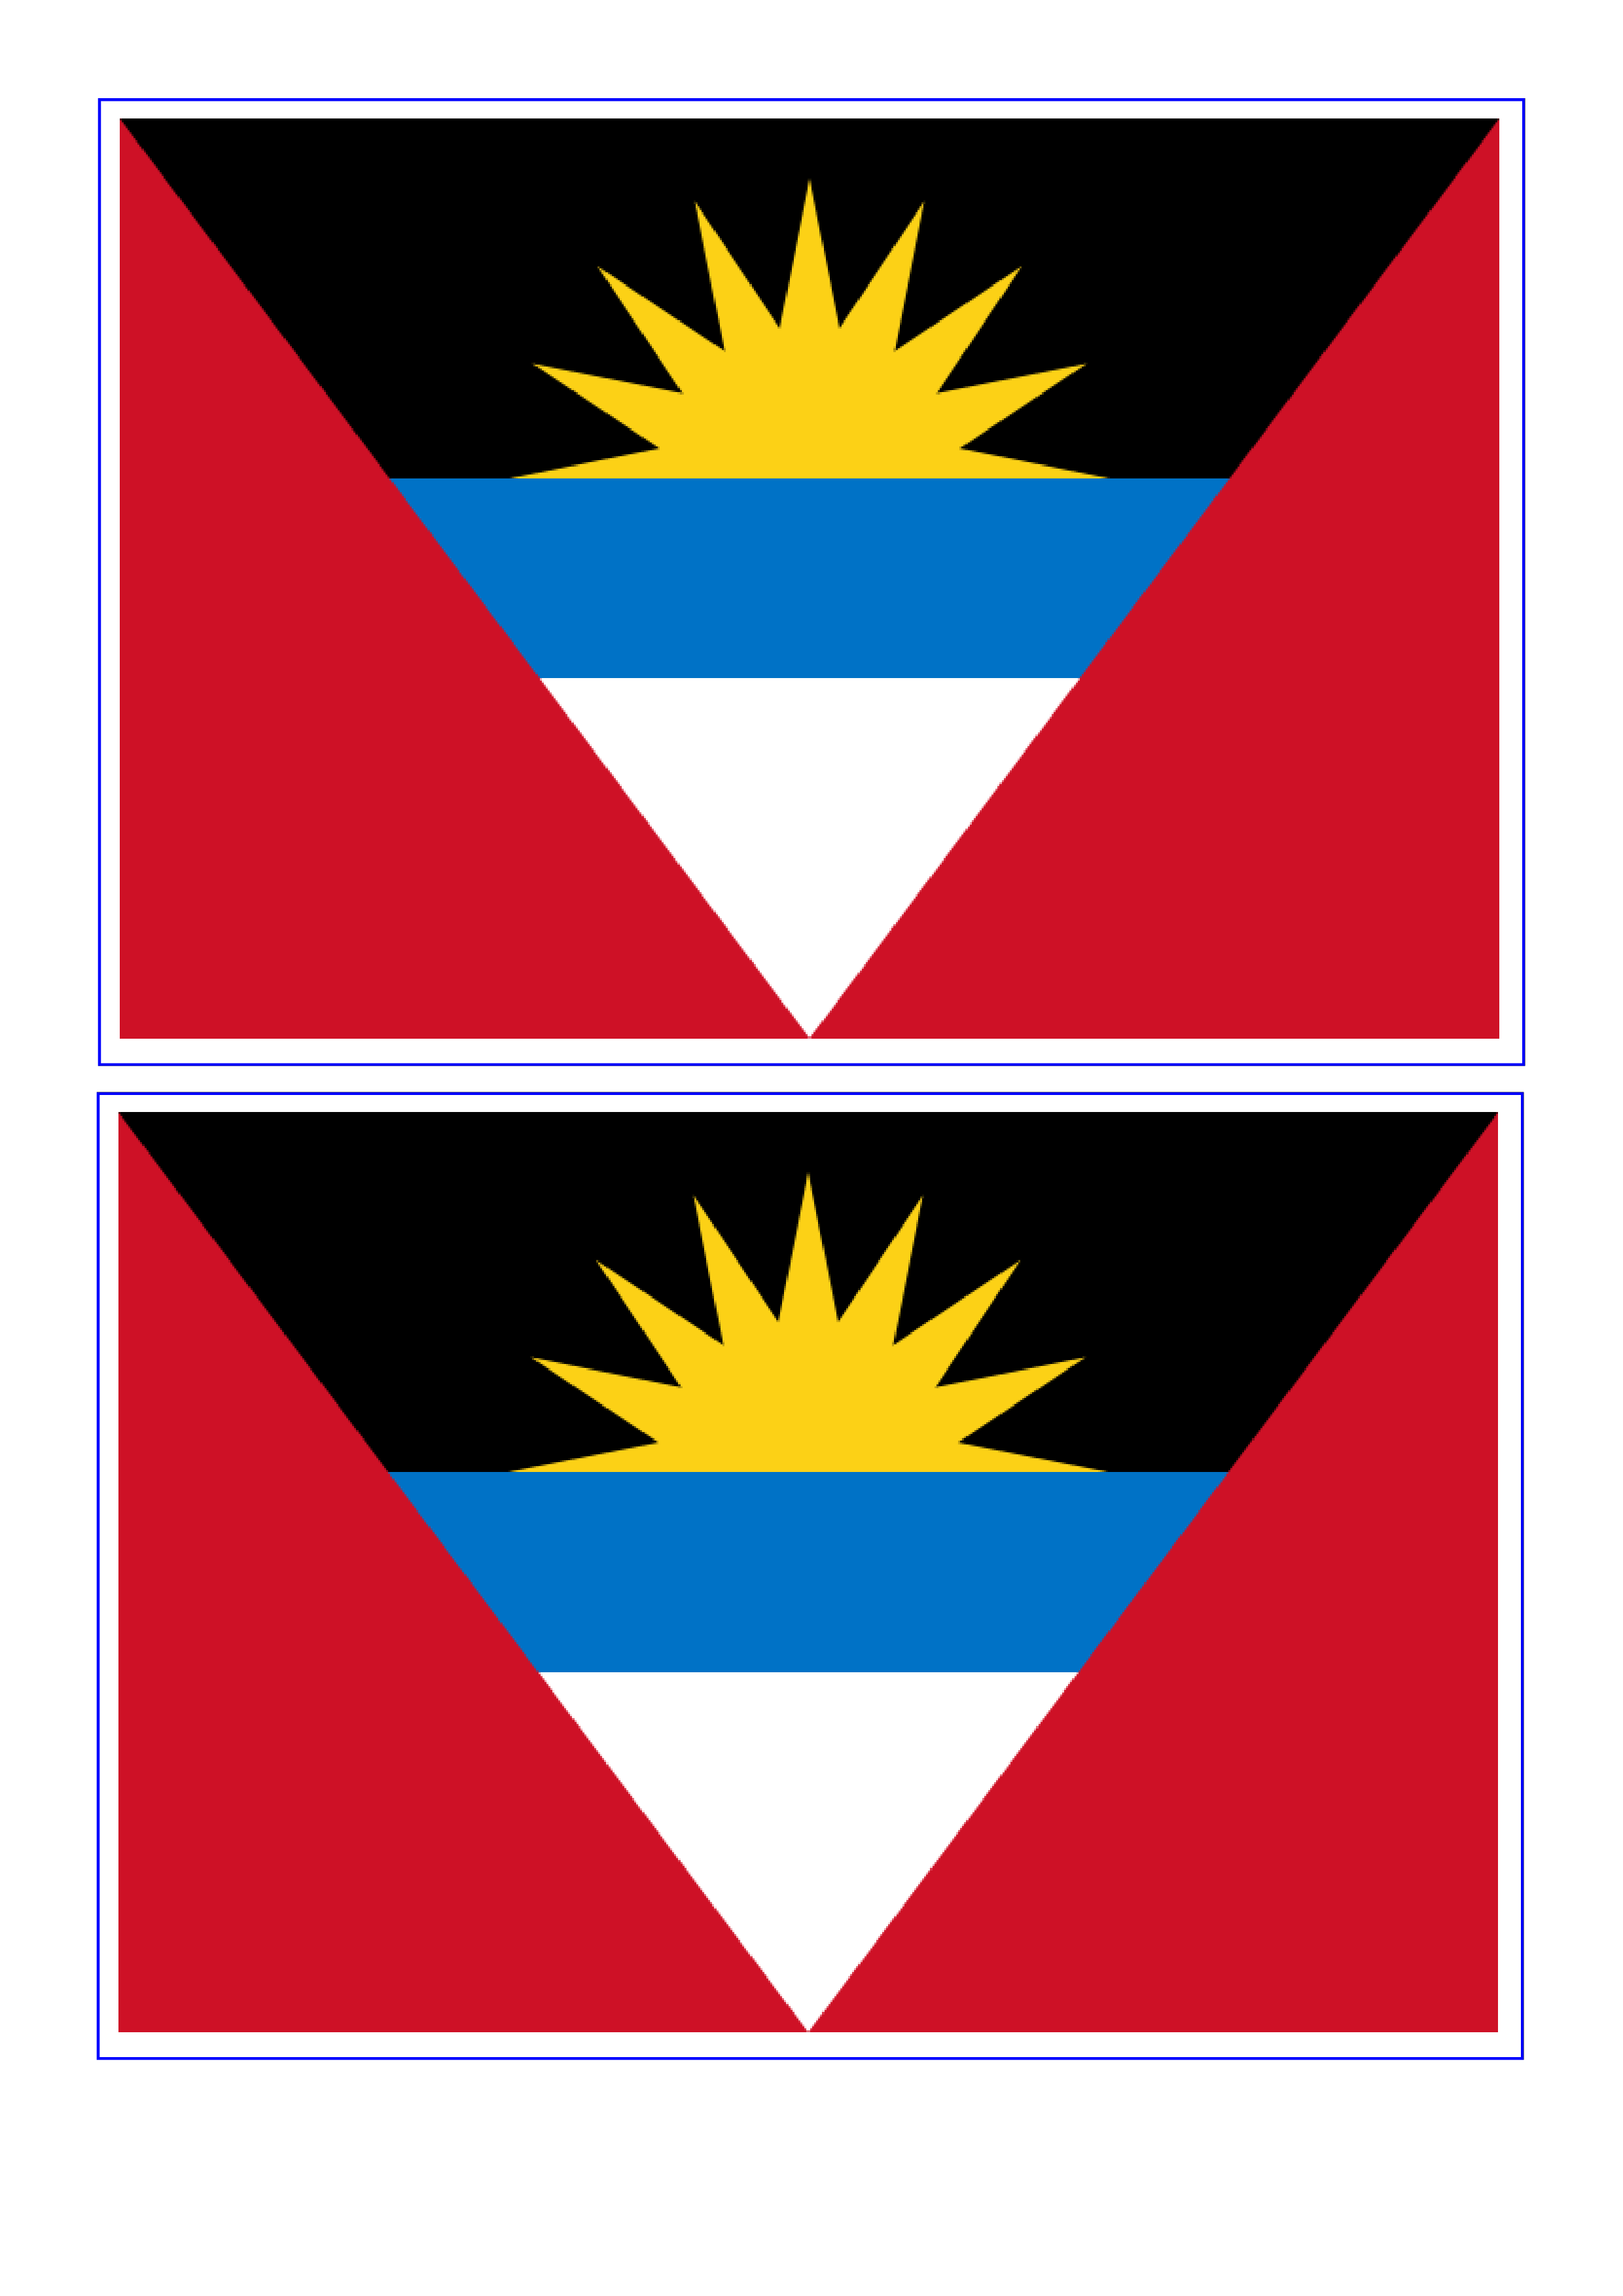 antigua and barbuda flag plantilla imagen principal